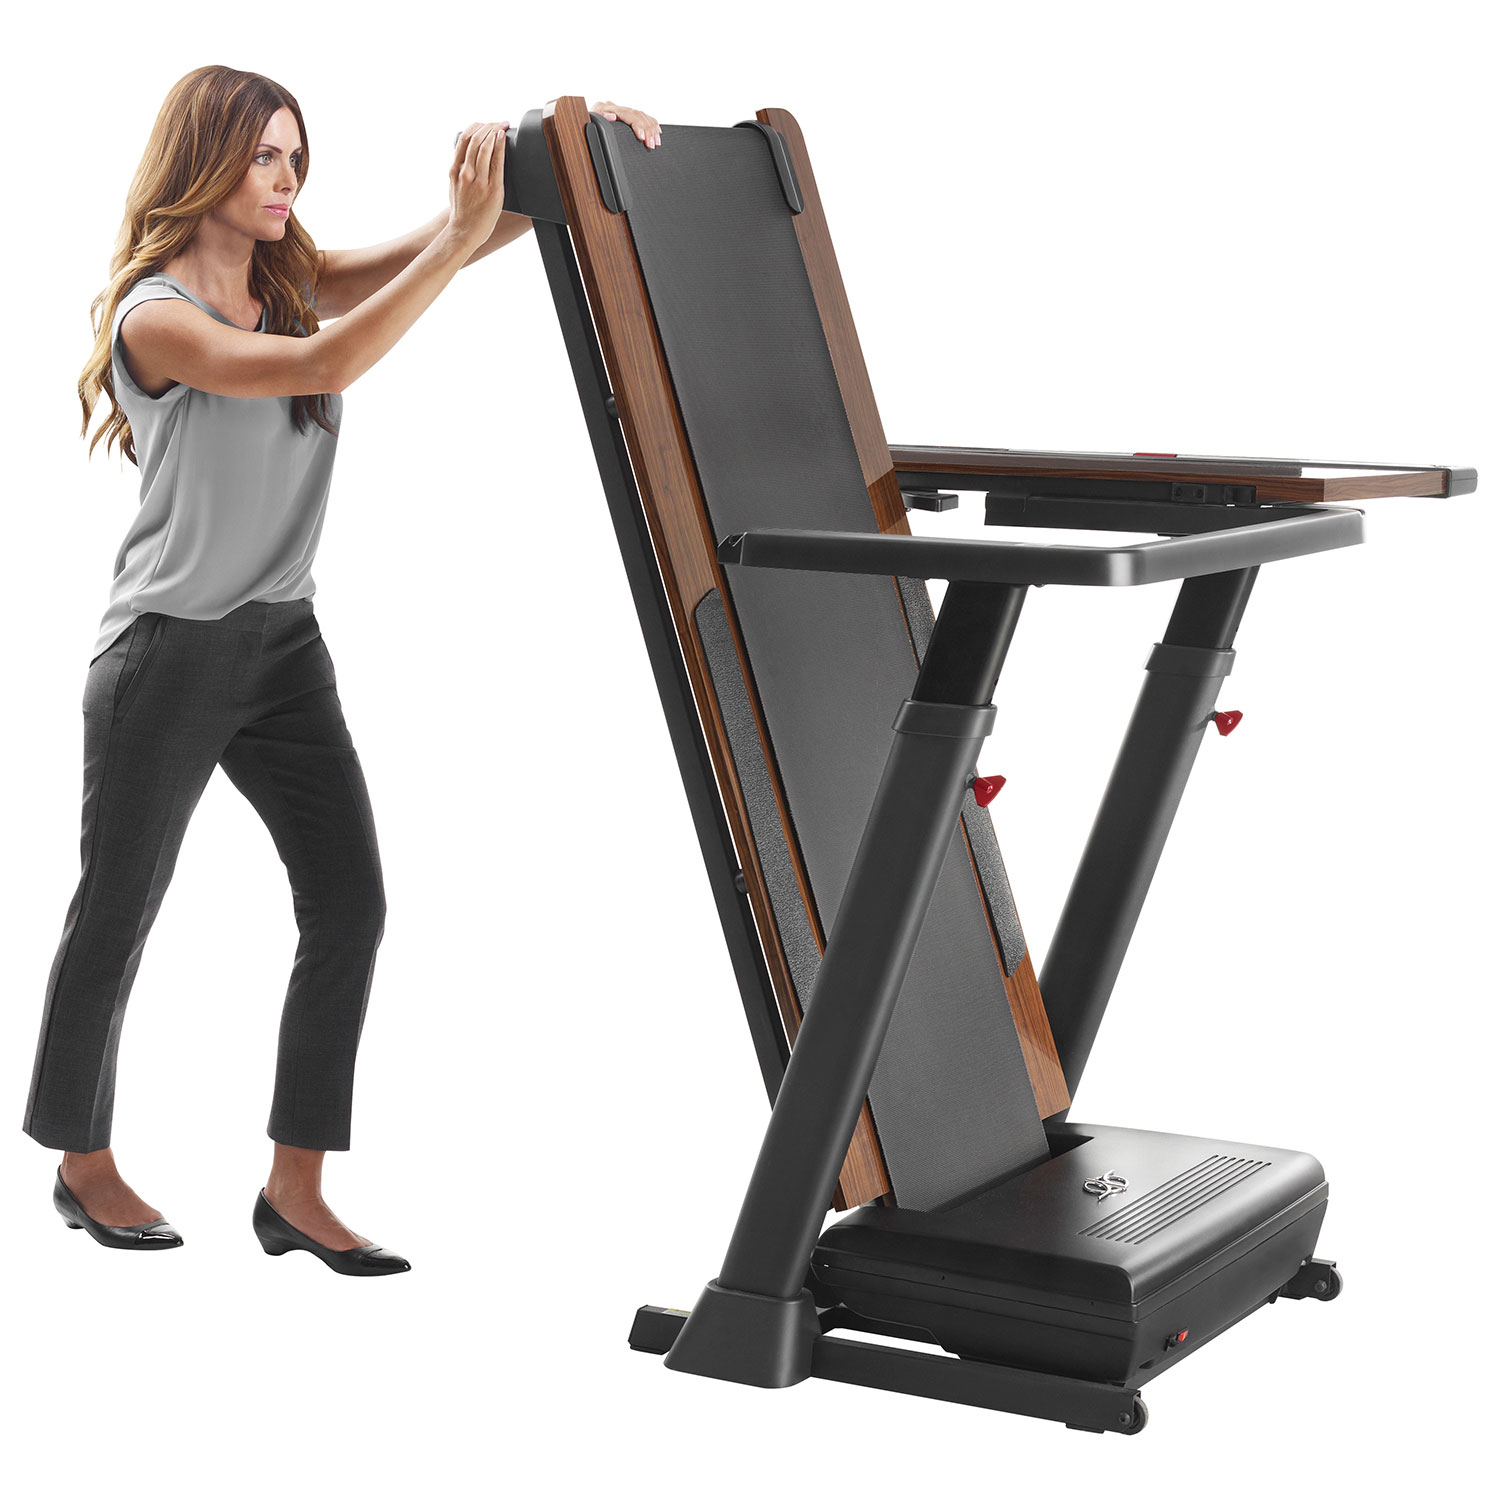 storing a treadmill